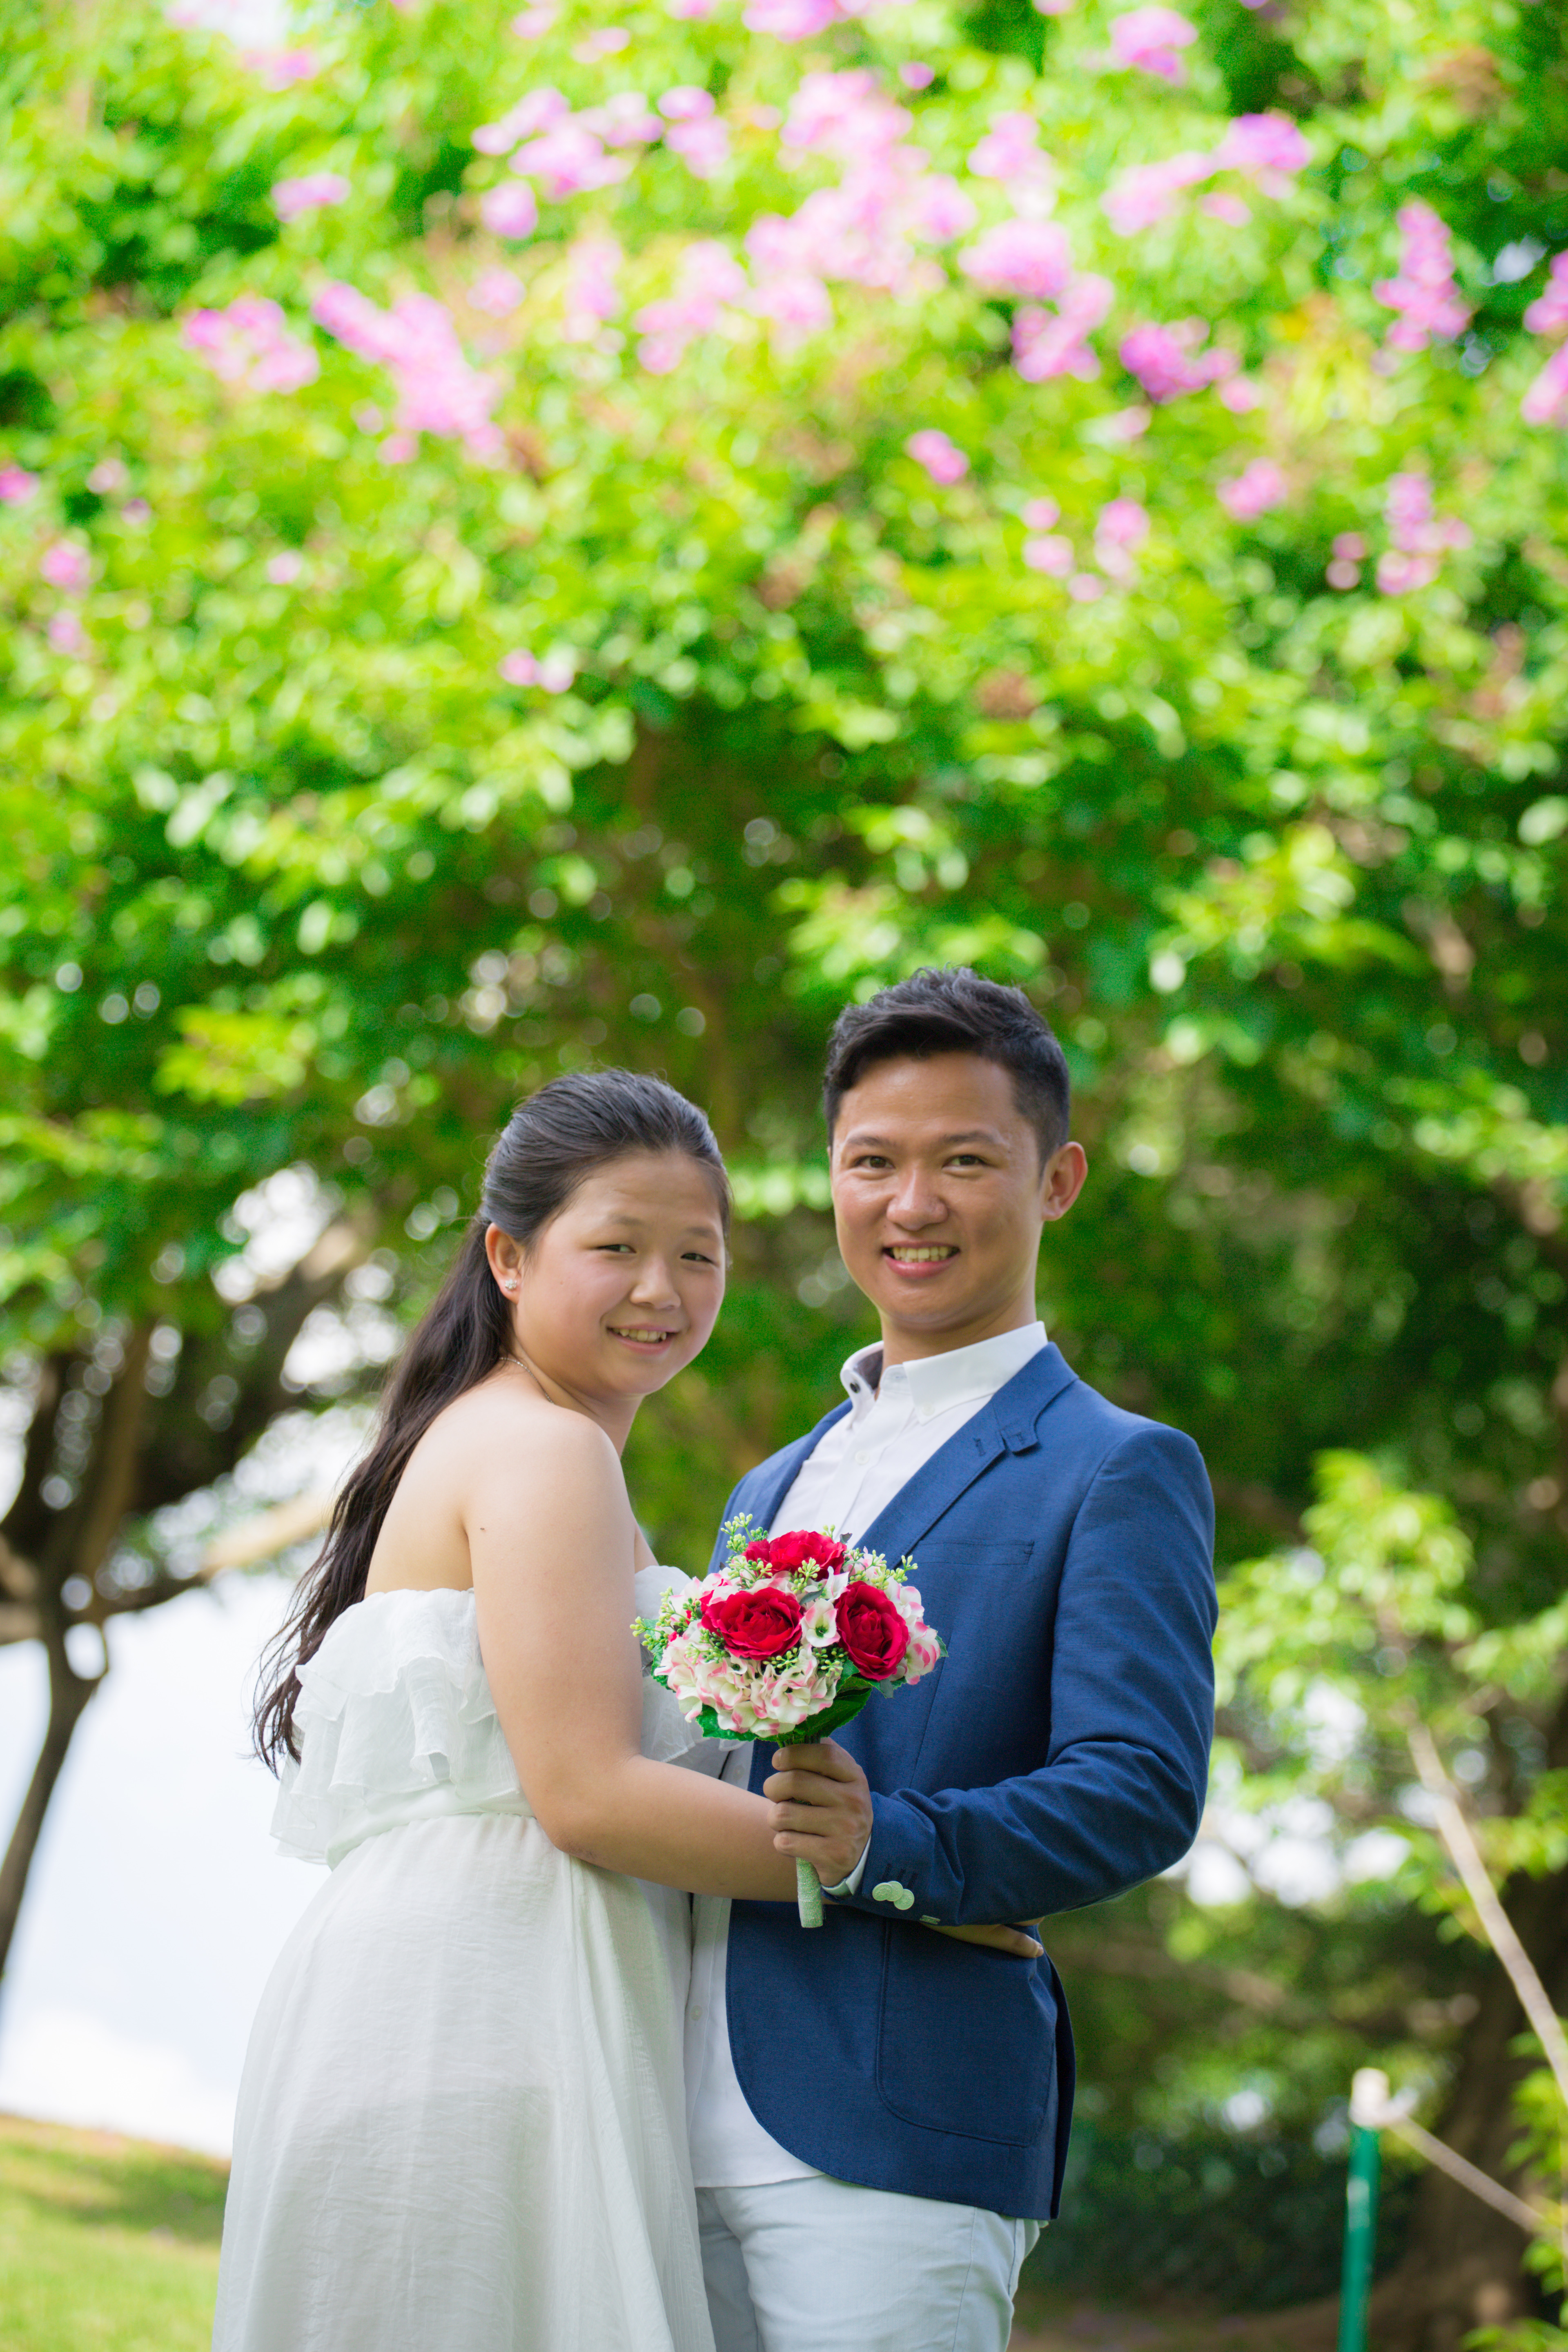 攝影師Andy Chau 工作紀錄: 婚紗攝影 Local Prewedding Photography